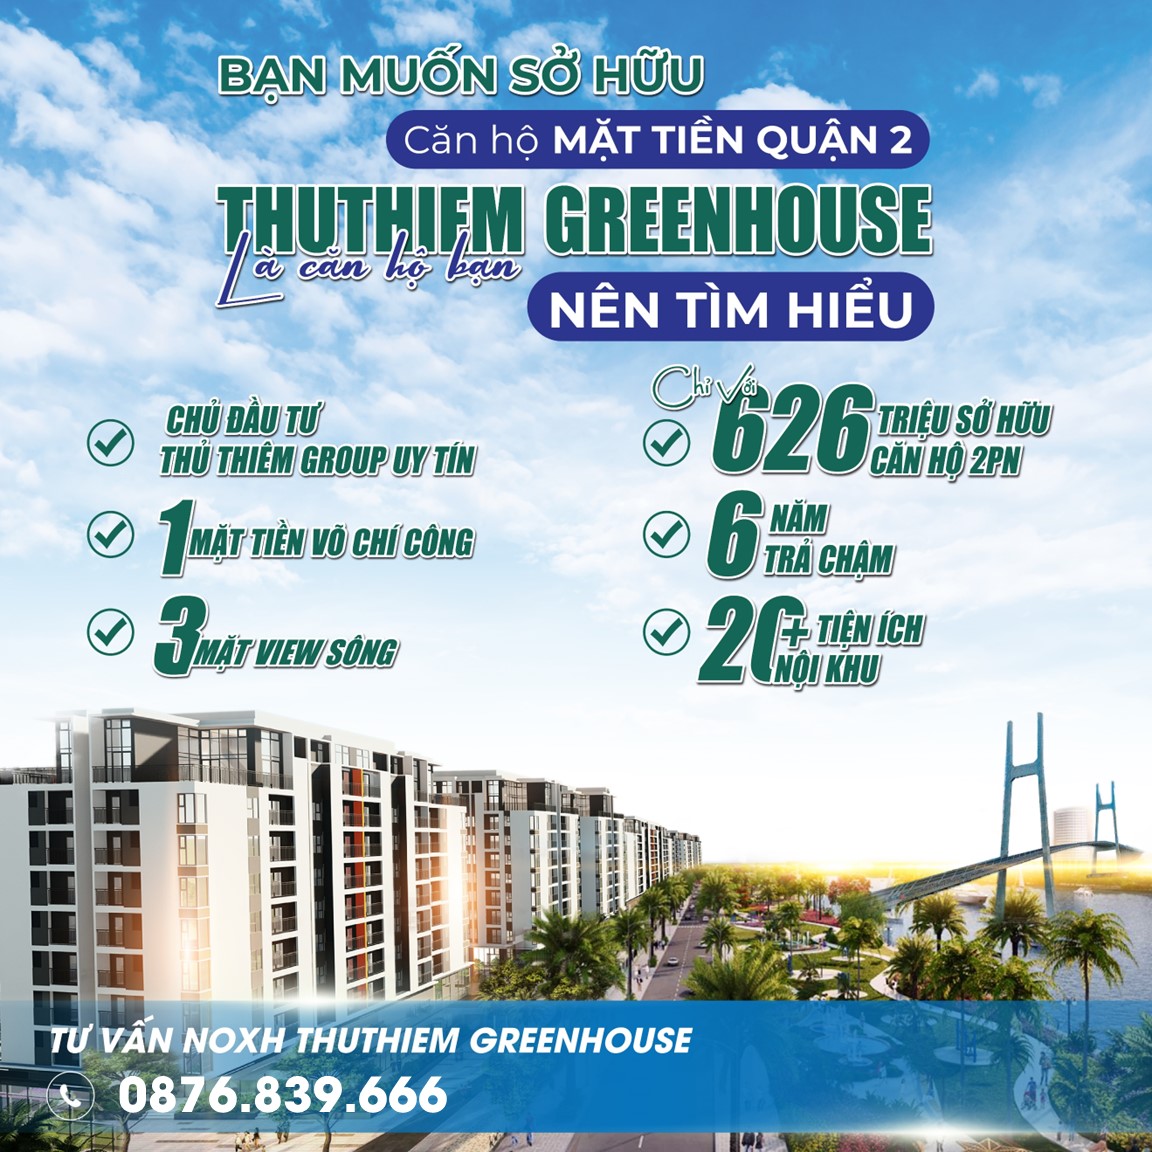 Những điểm khiến Thủ Thiêm Green House trở thành điểm sáng trong phân khúc căn hộ NOXH và là xu thế của thị trường BĐS năm 2023